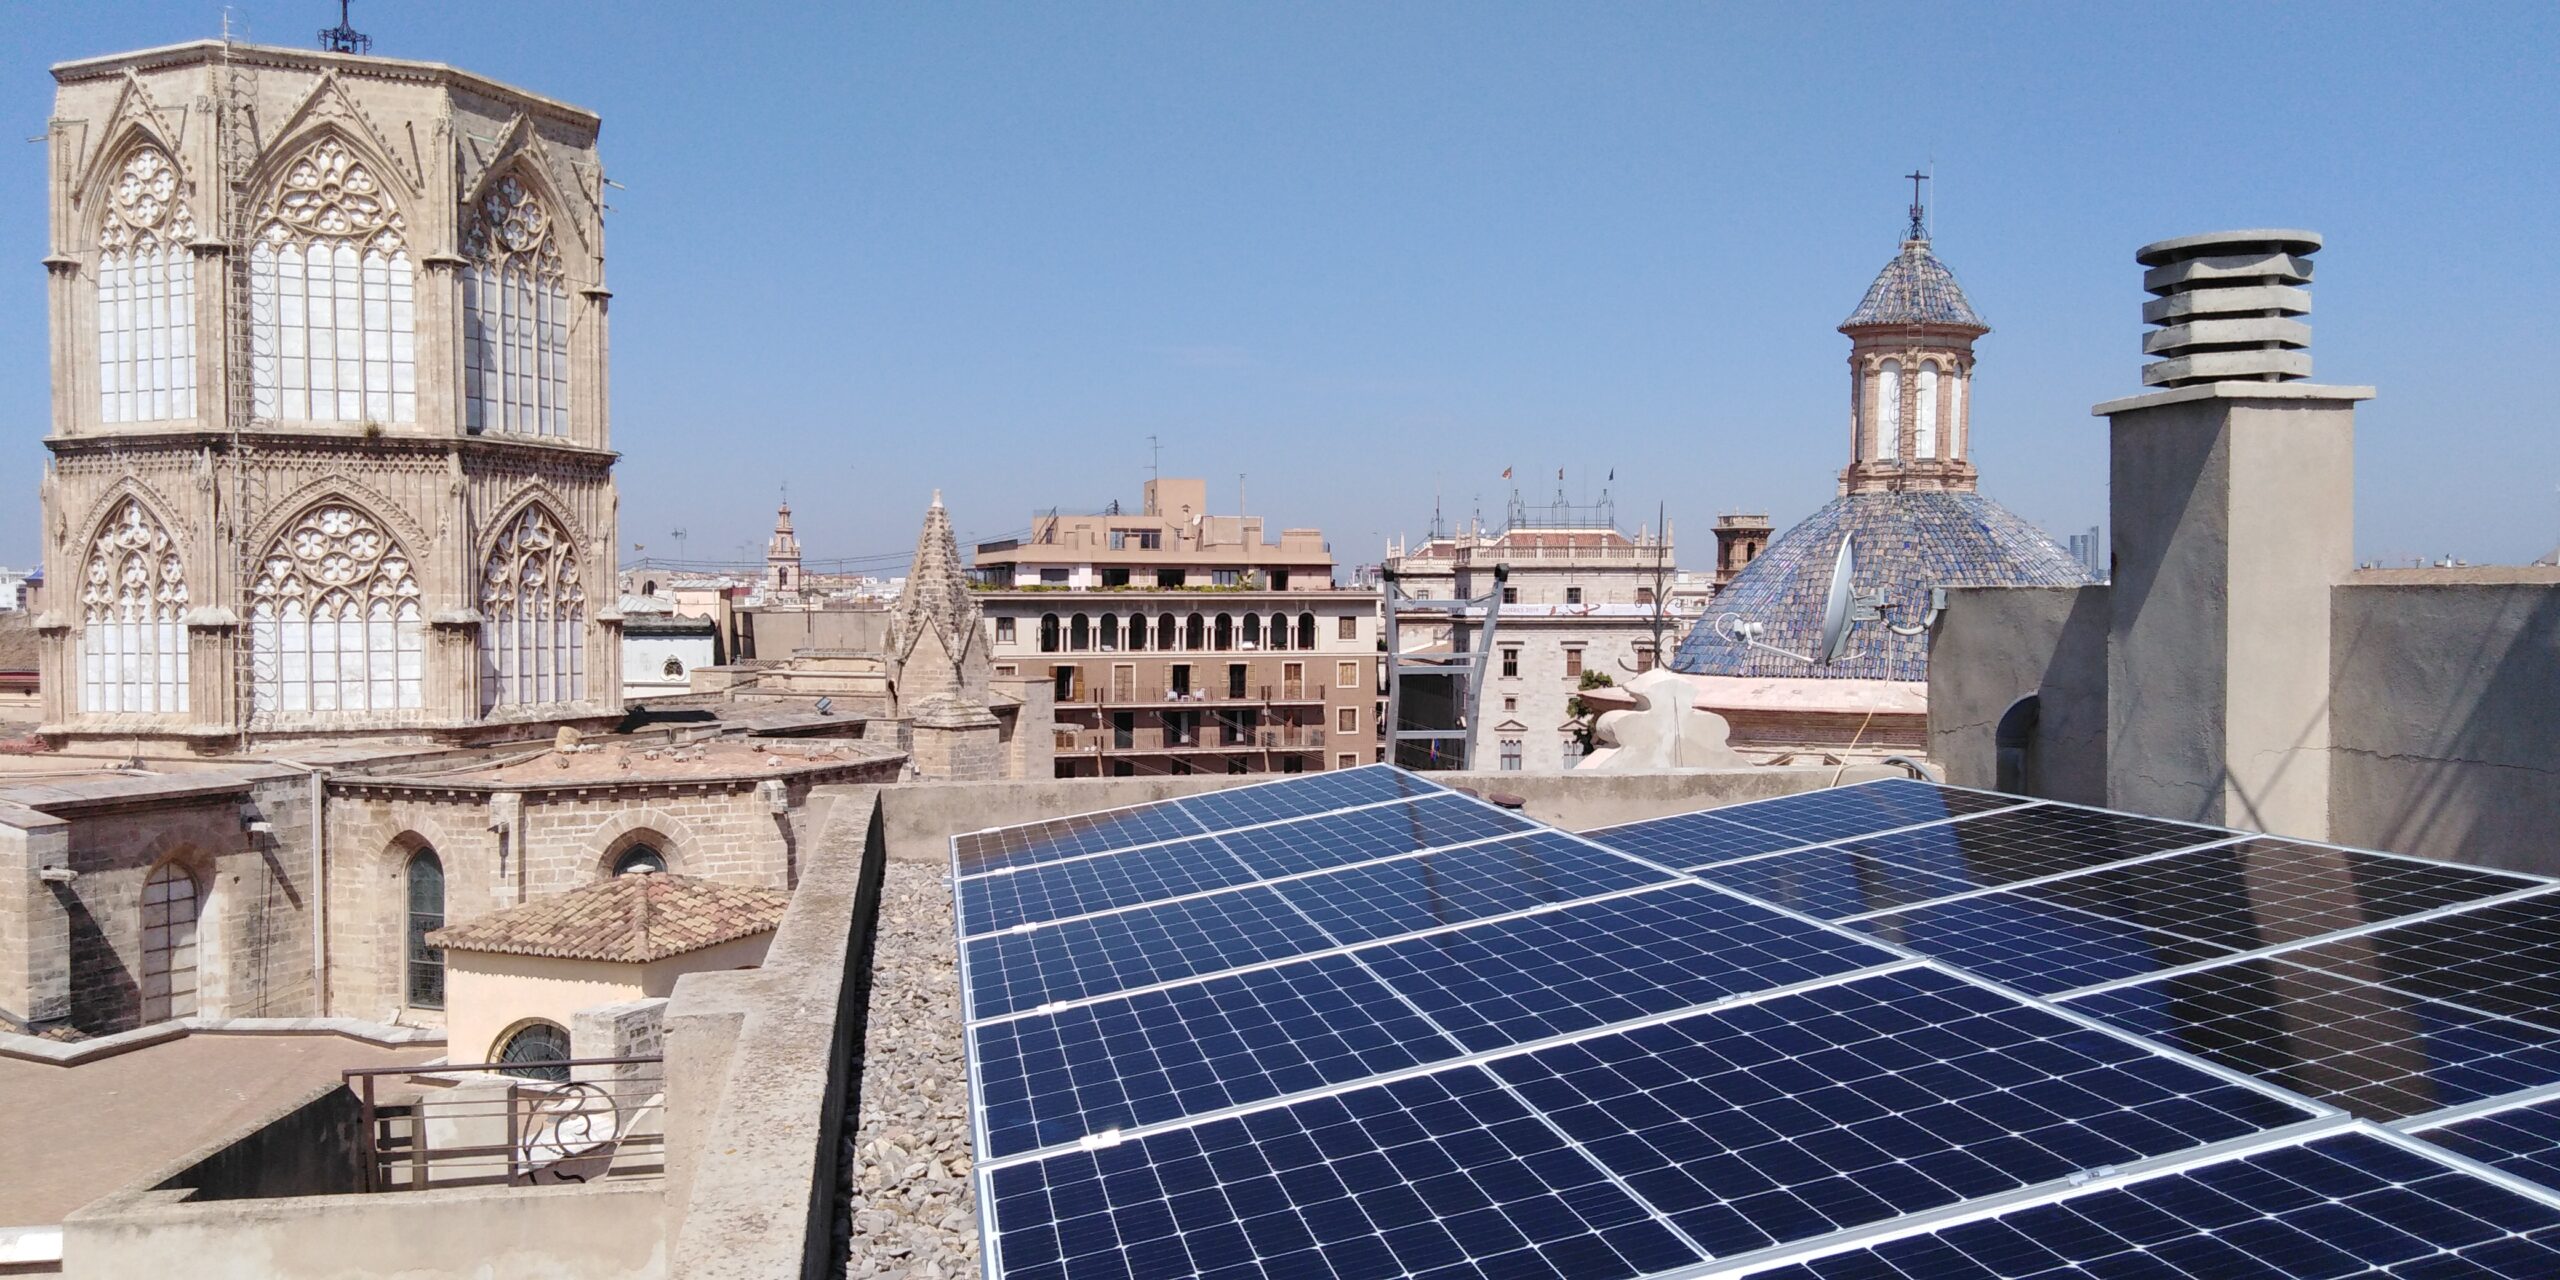 Instalación de placas solares en Valencia